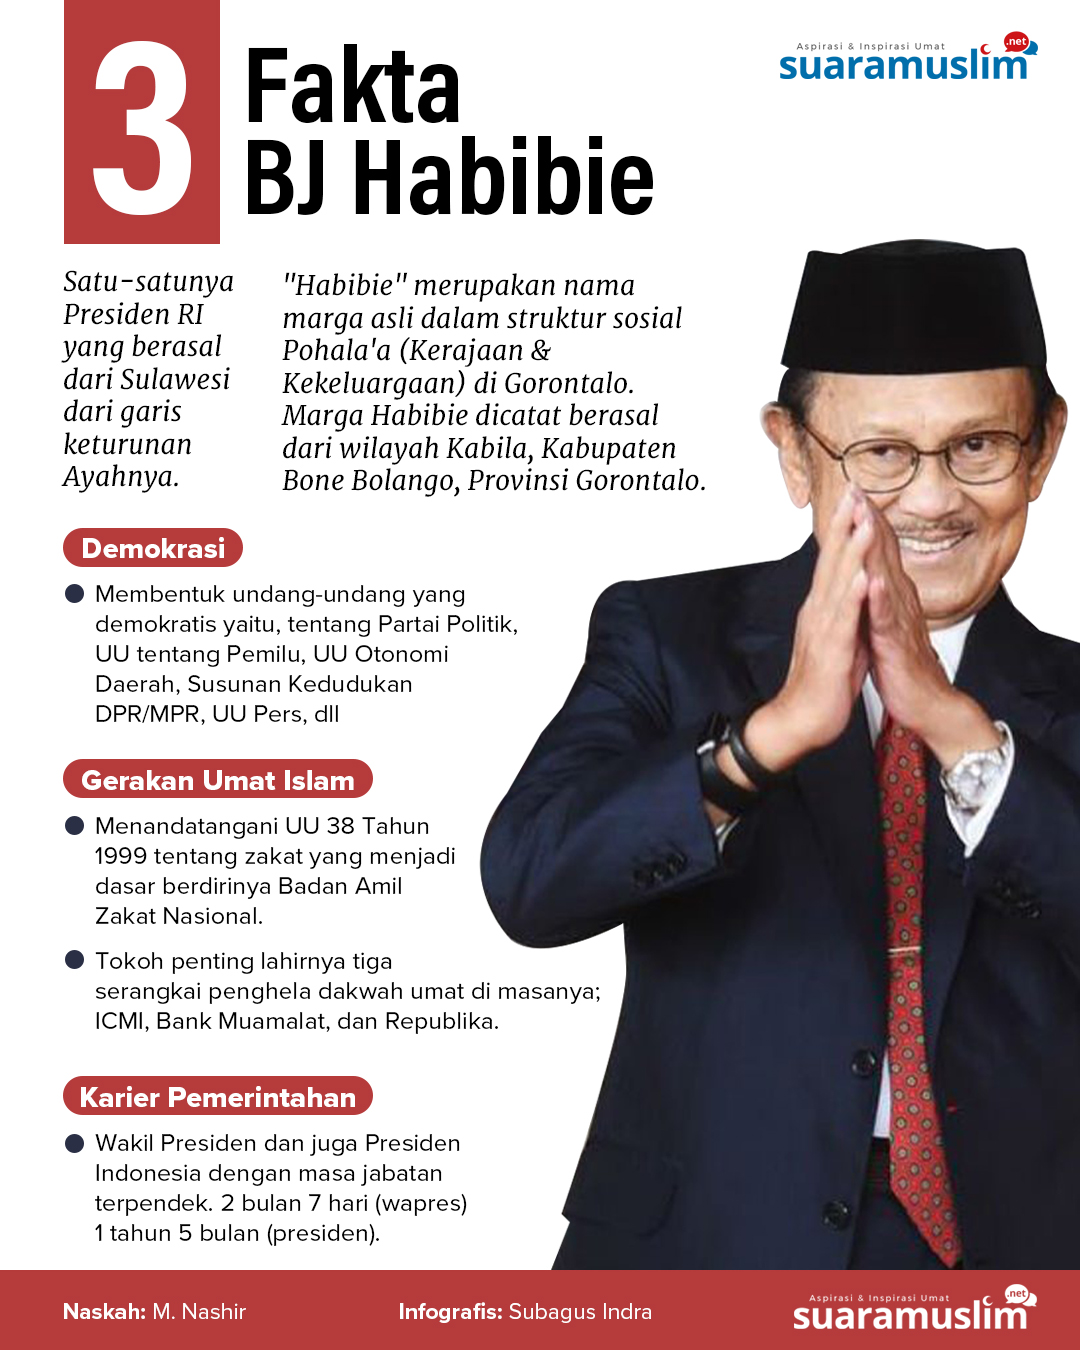 Apakah jabatan tertinggi bj habibie dalam pemerintah indonesia